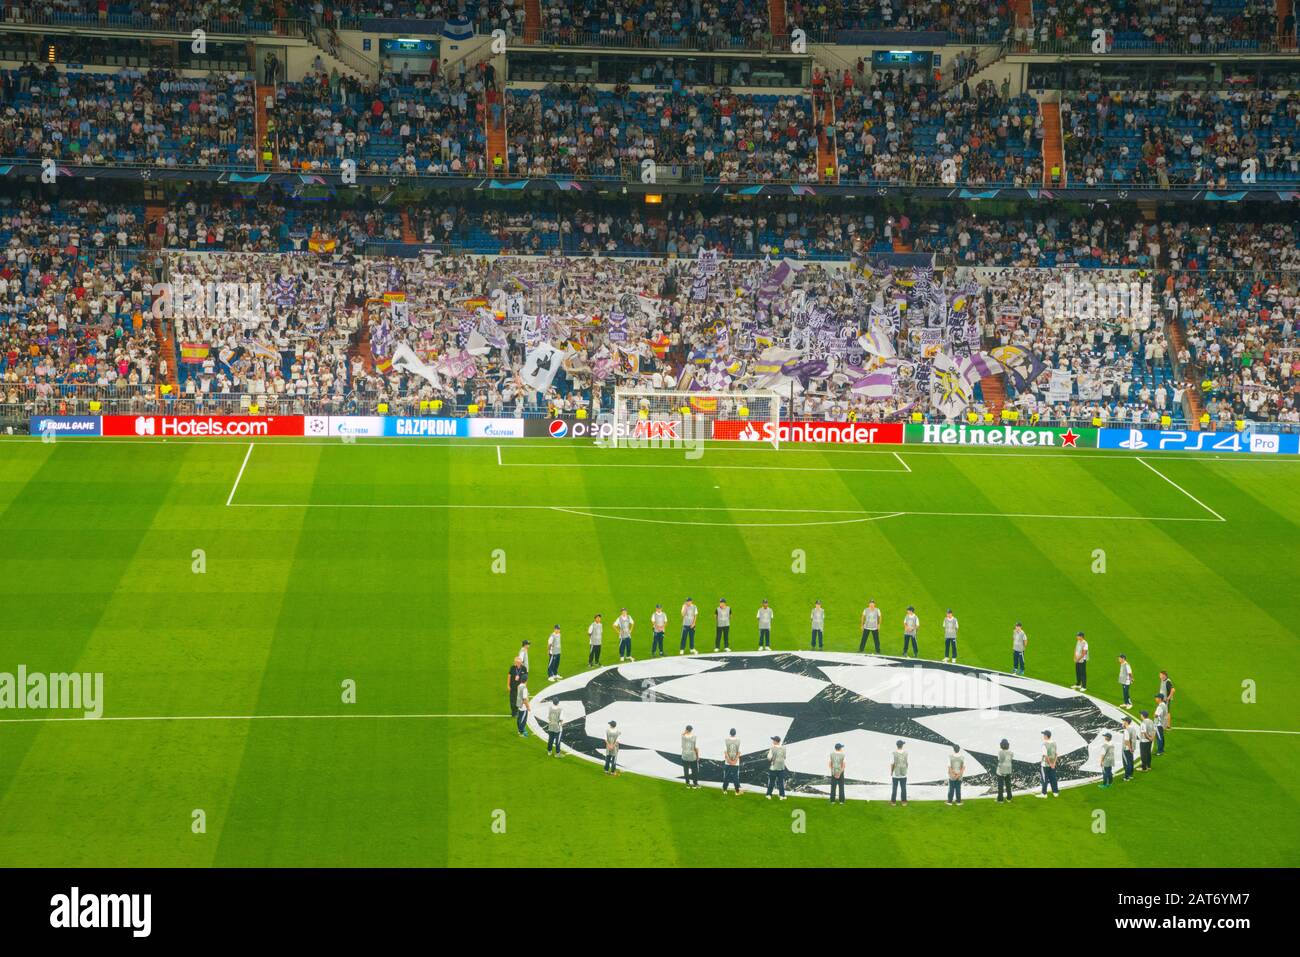 Les gens qui entourent le symbole de la Ligue des Champions avant un match de football. Stade Santiago Bernabeu, Madrid, Espagne. Banque D'Images